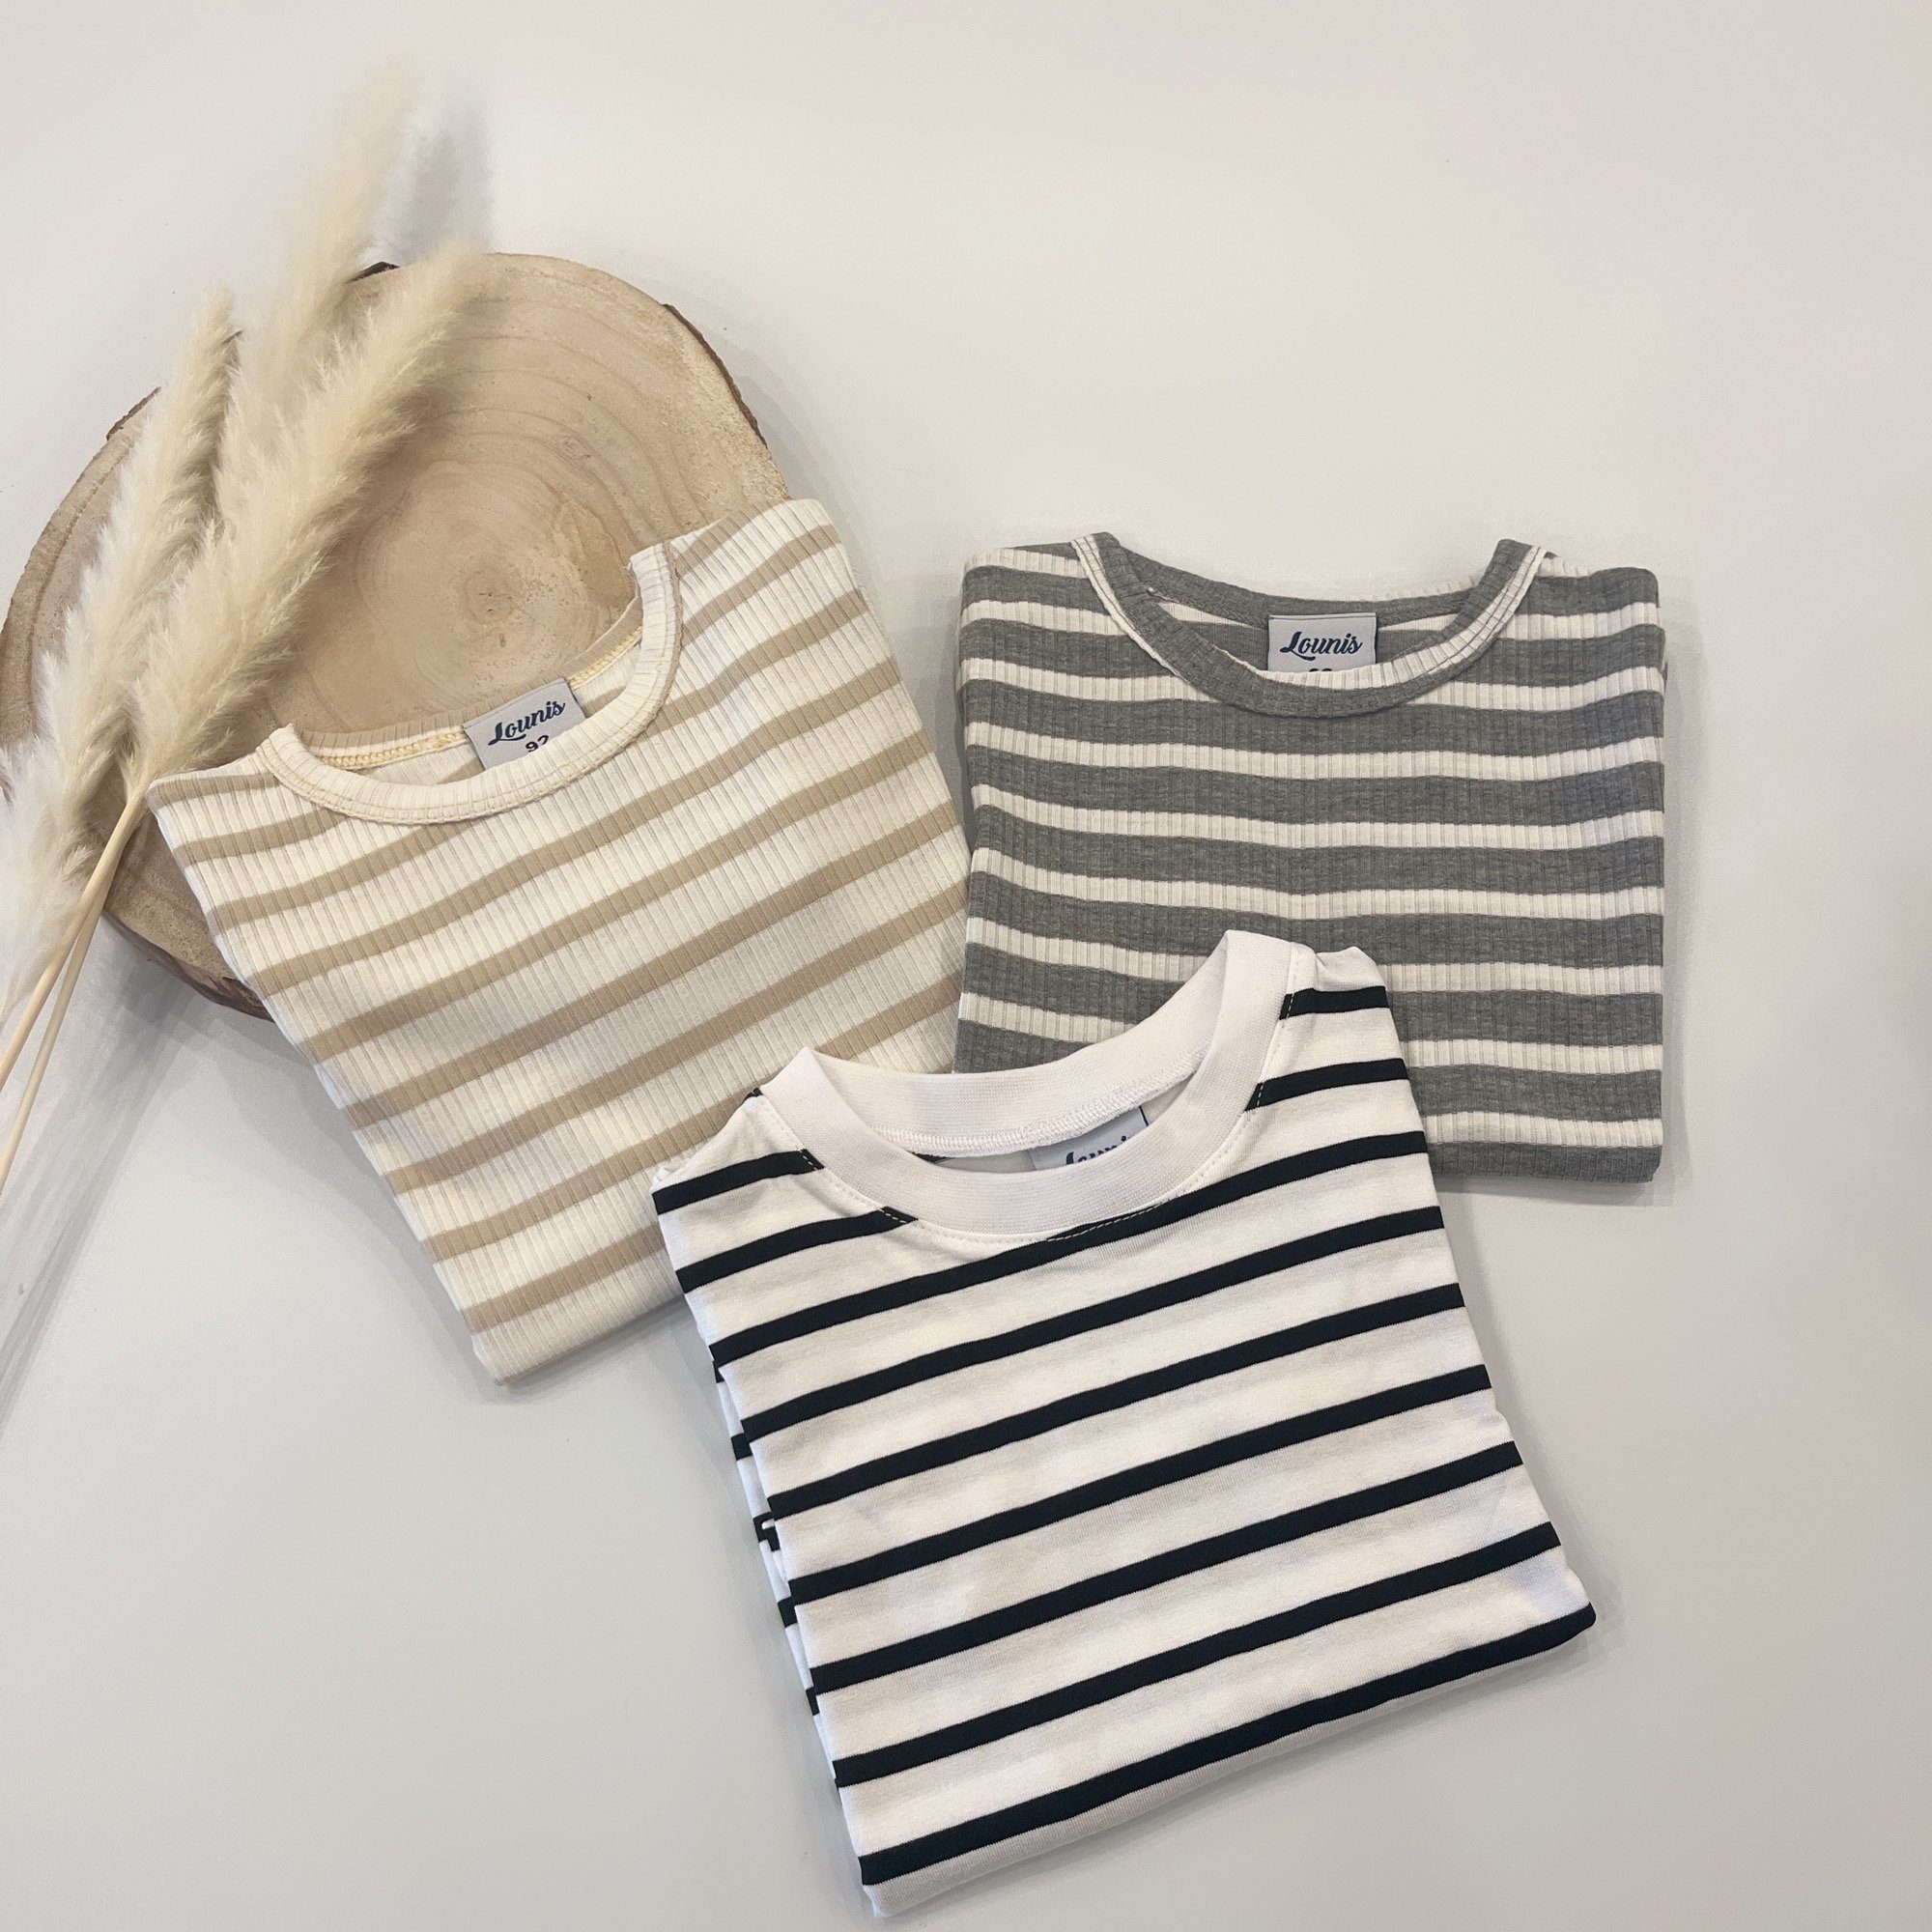 grau-weiß/gestreift - Baby T-Shirt Kinder Lounis Streifen Shirt - T-Shirt -